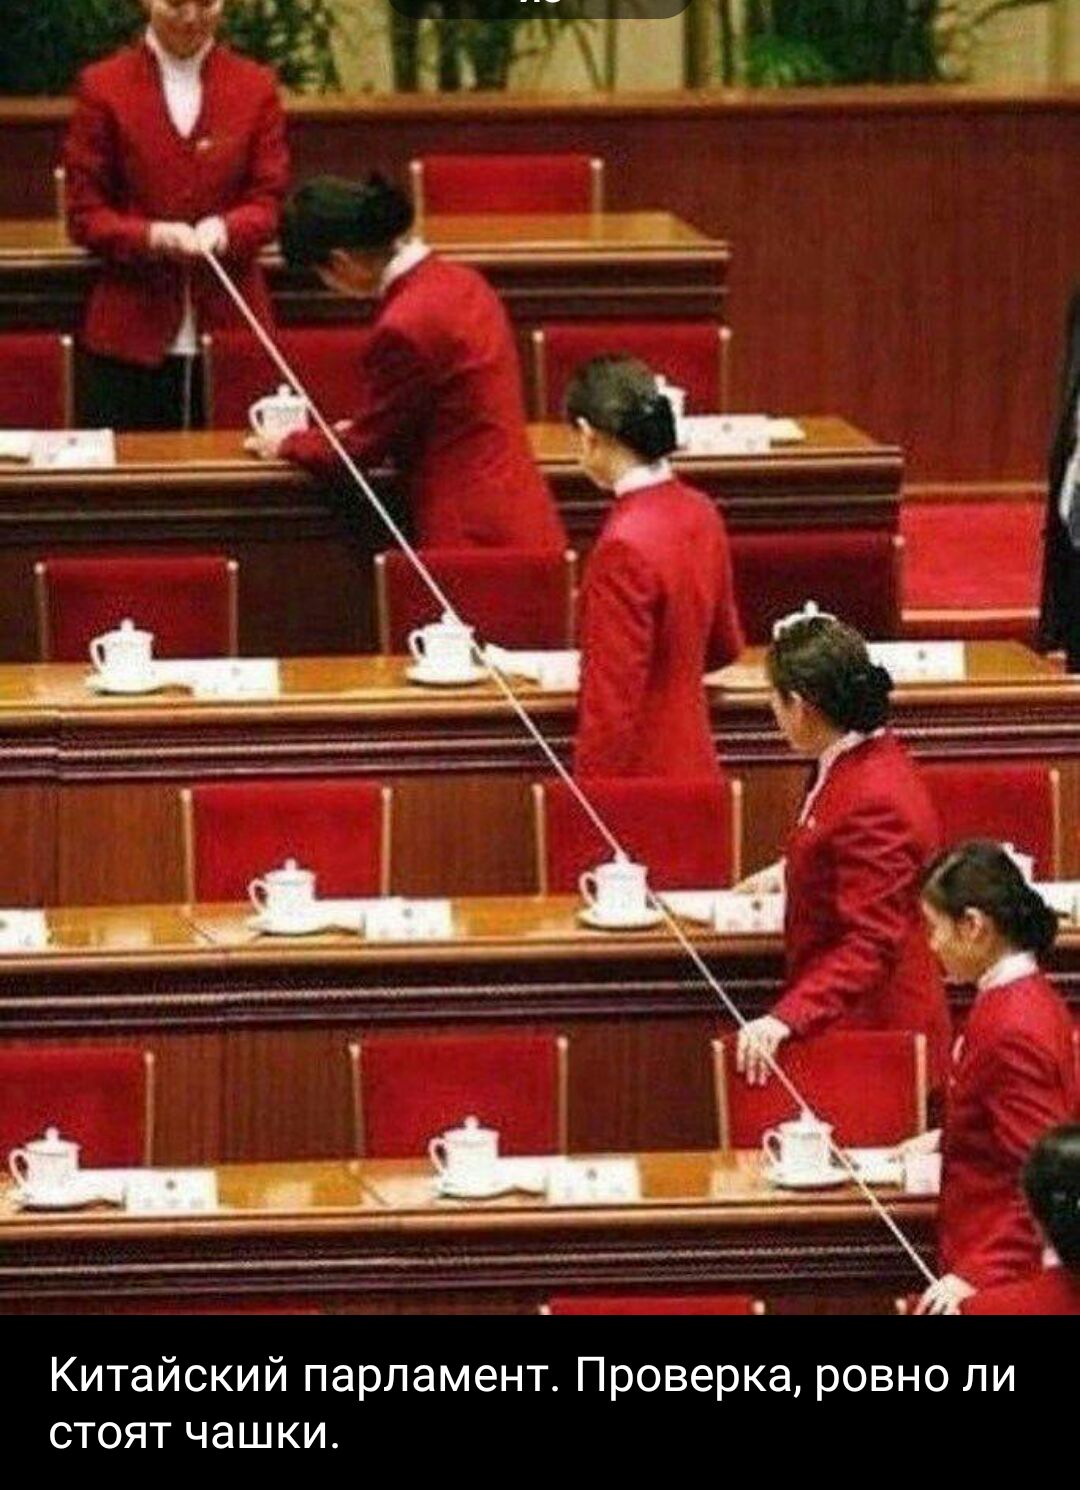 Китайский парламент Проверка ровно пи стоят чашки